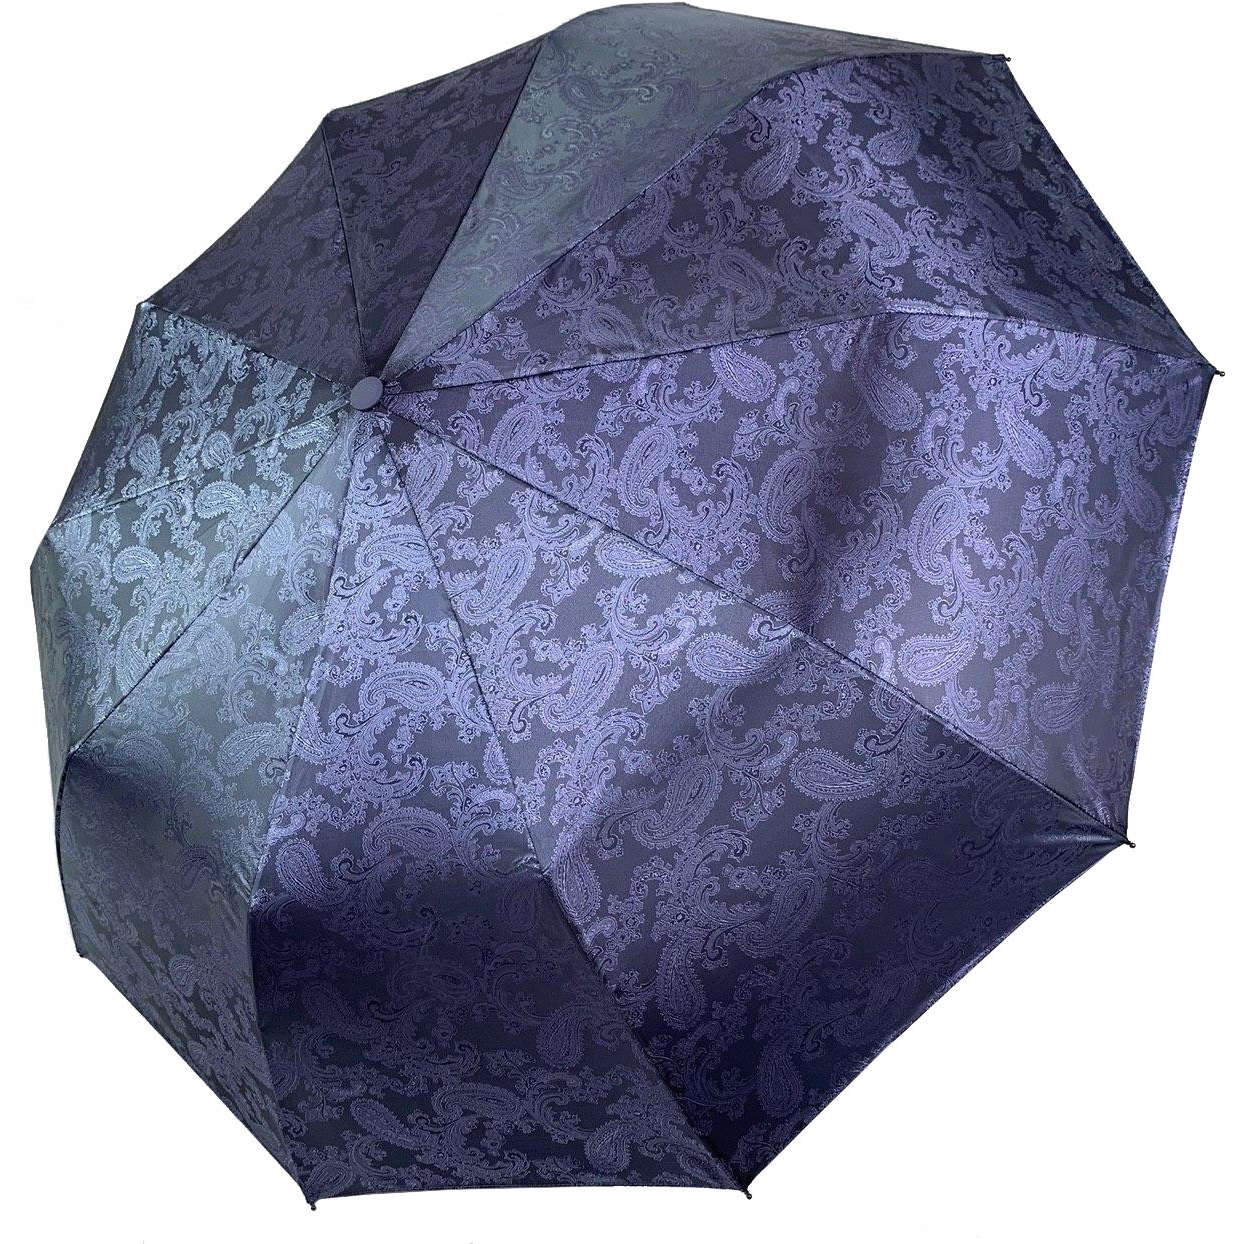 Женский складной зонтик полуавтомат Bellissima 102 см фиолетовый - фото 1